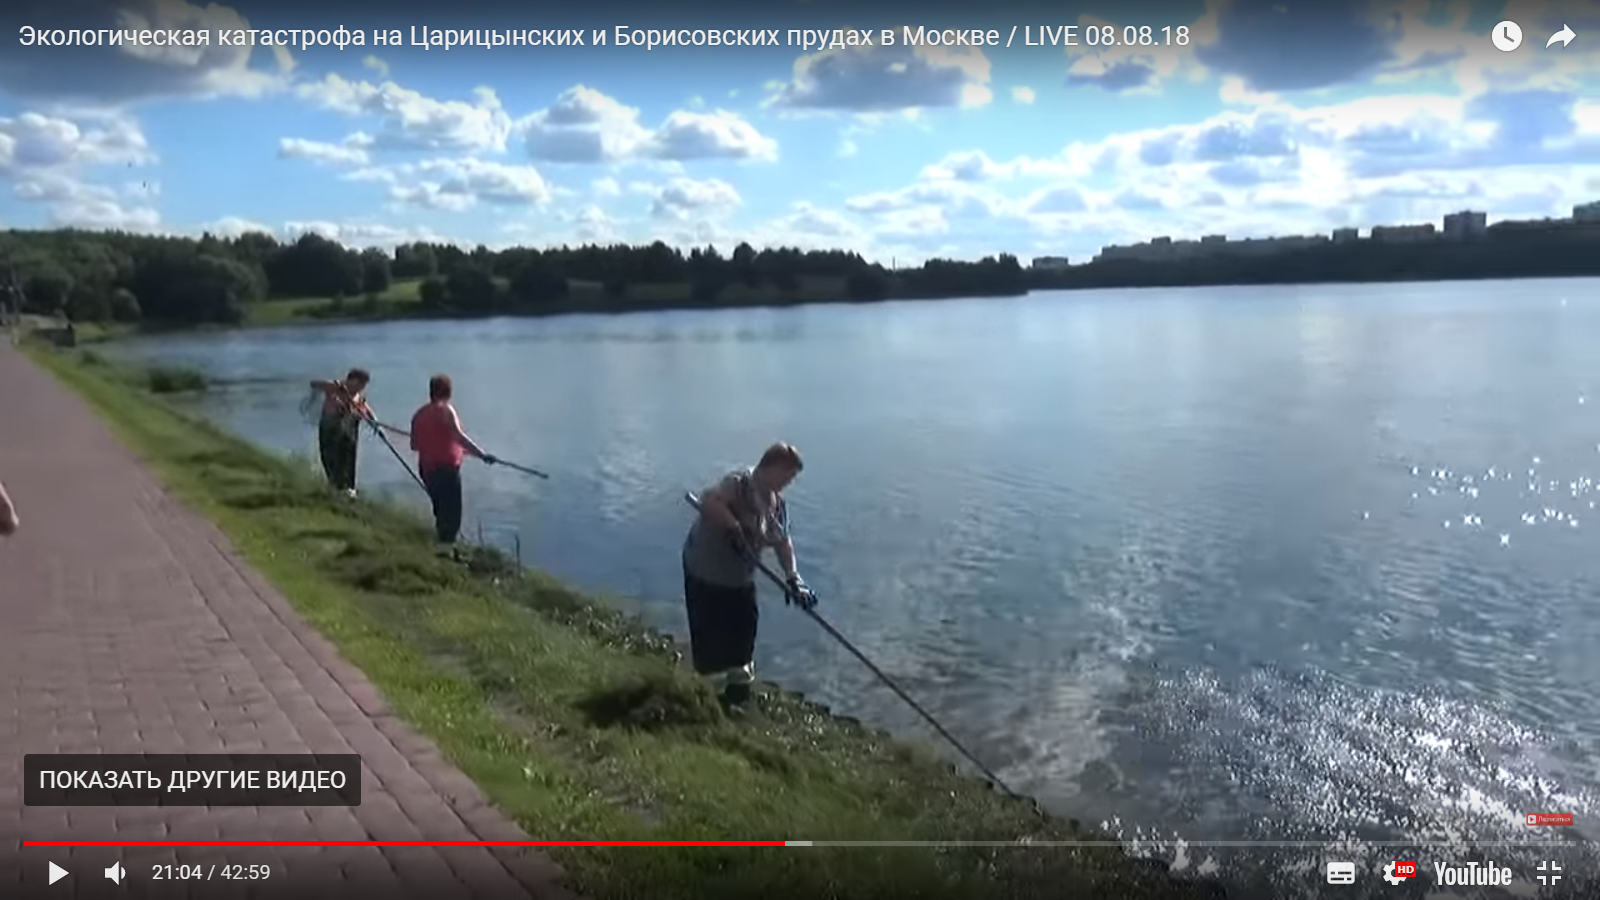 Видео дня: дохлую рыбу с московских прудов вывозят грузовиками